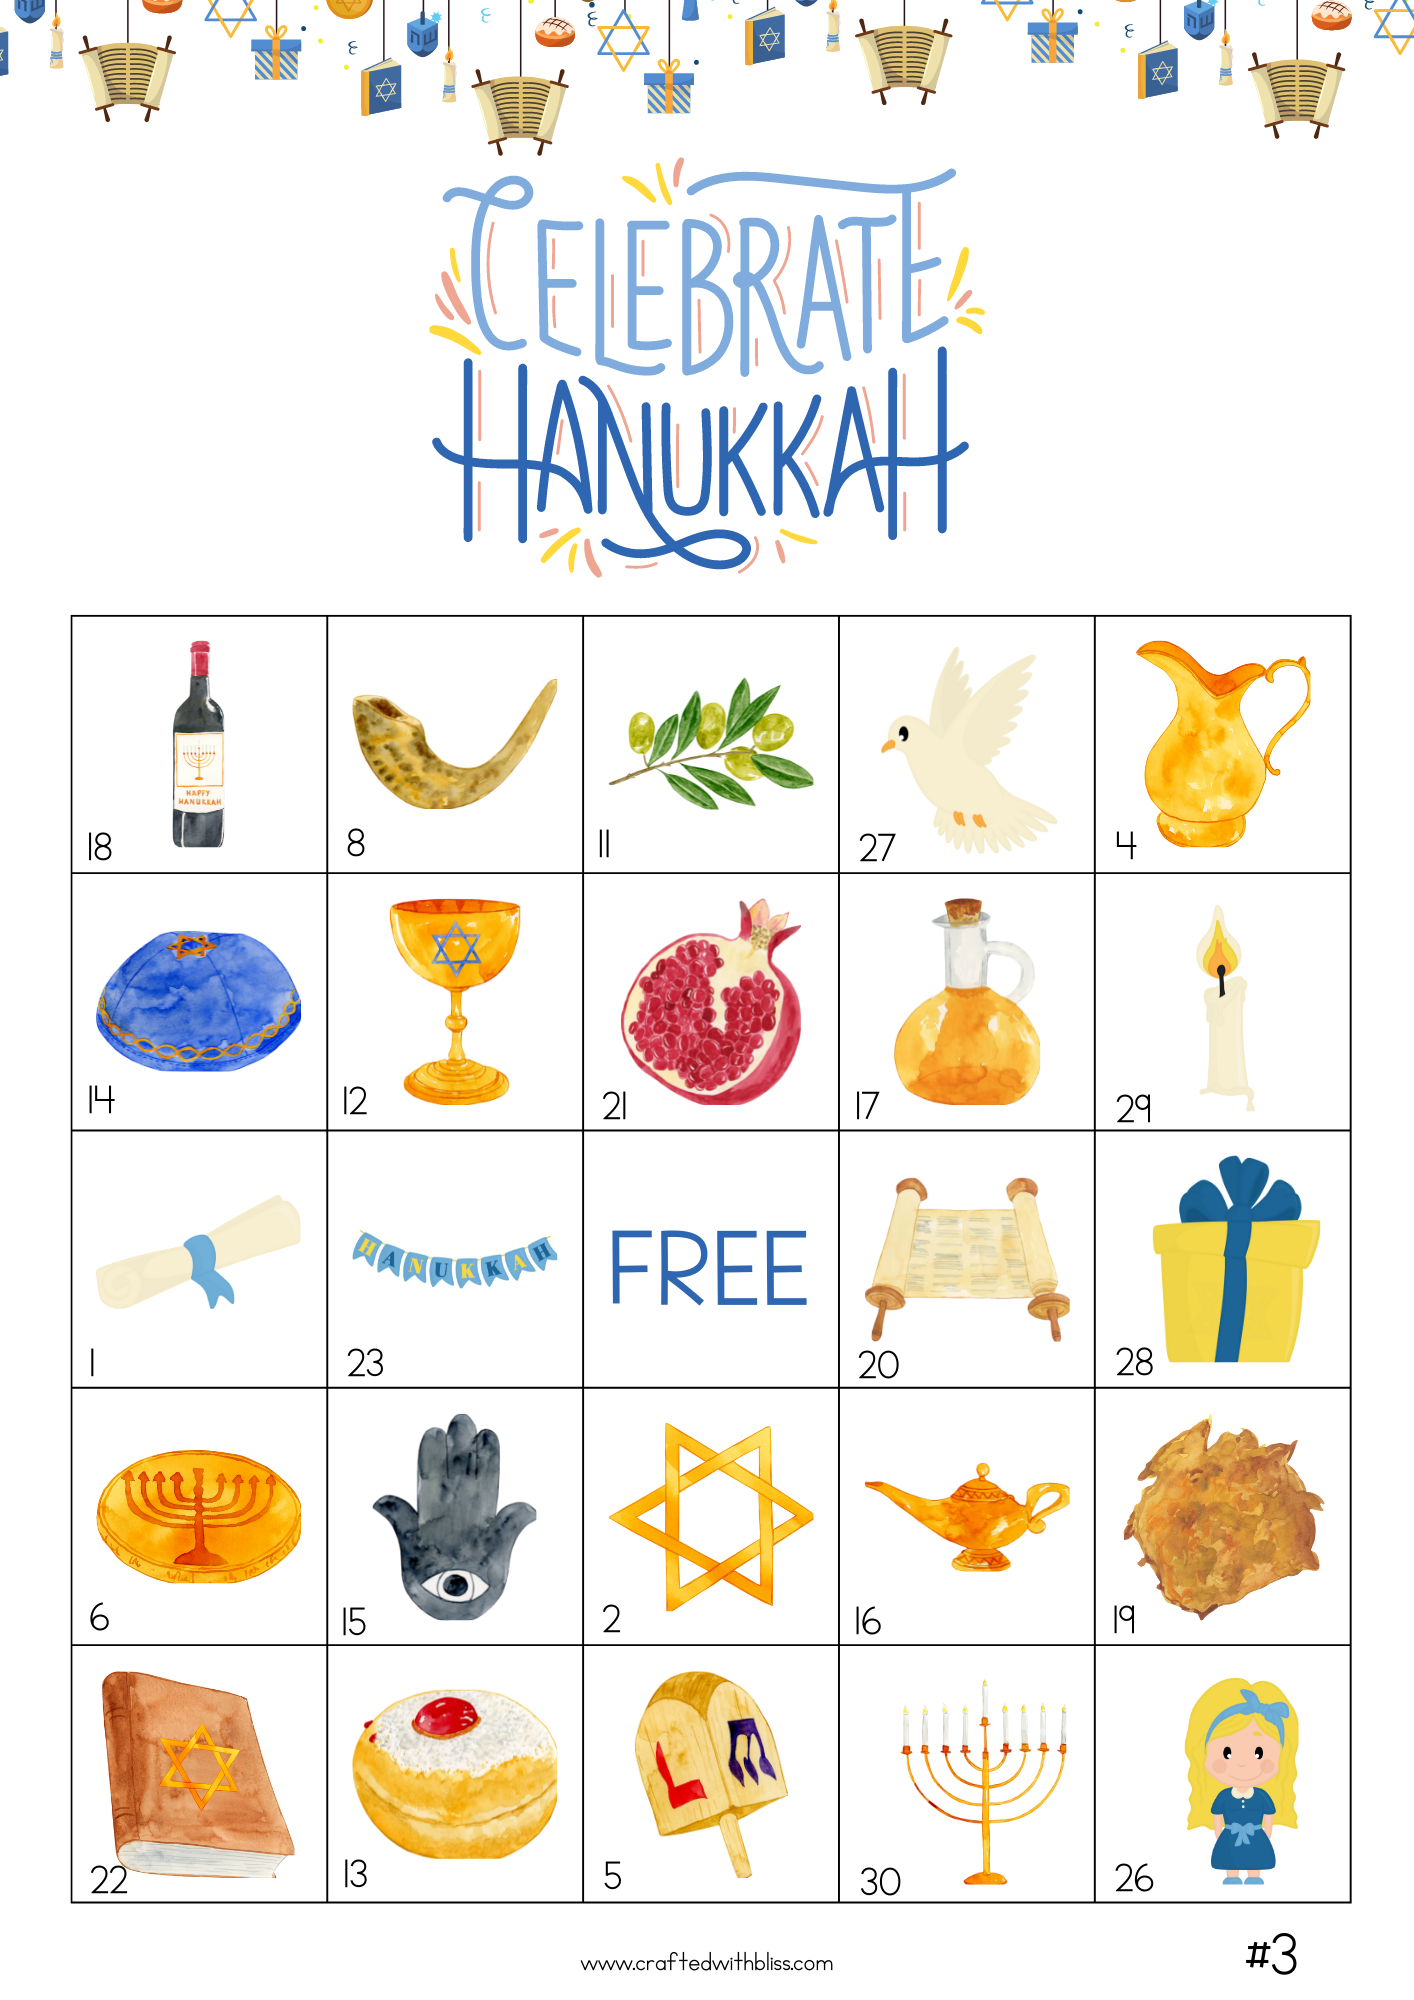 50 Hanukkah Bingo Cards (5x5)